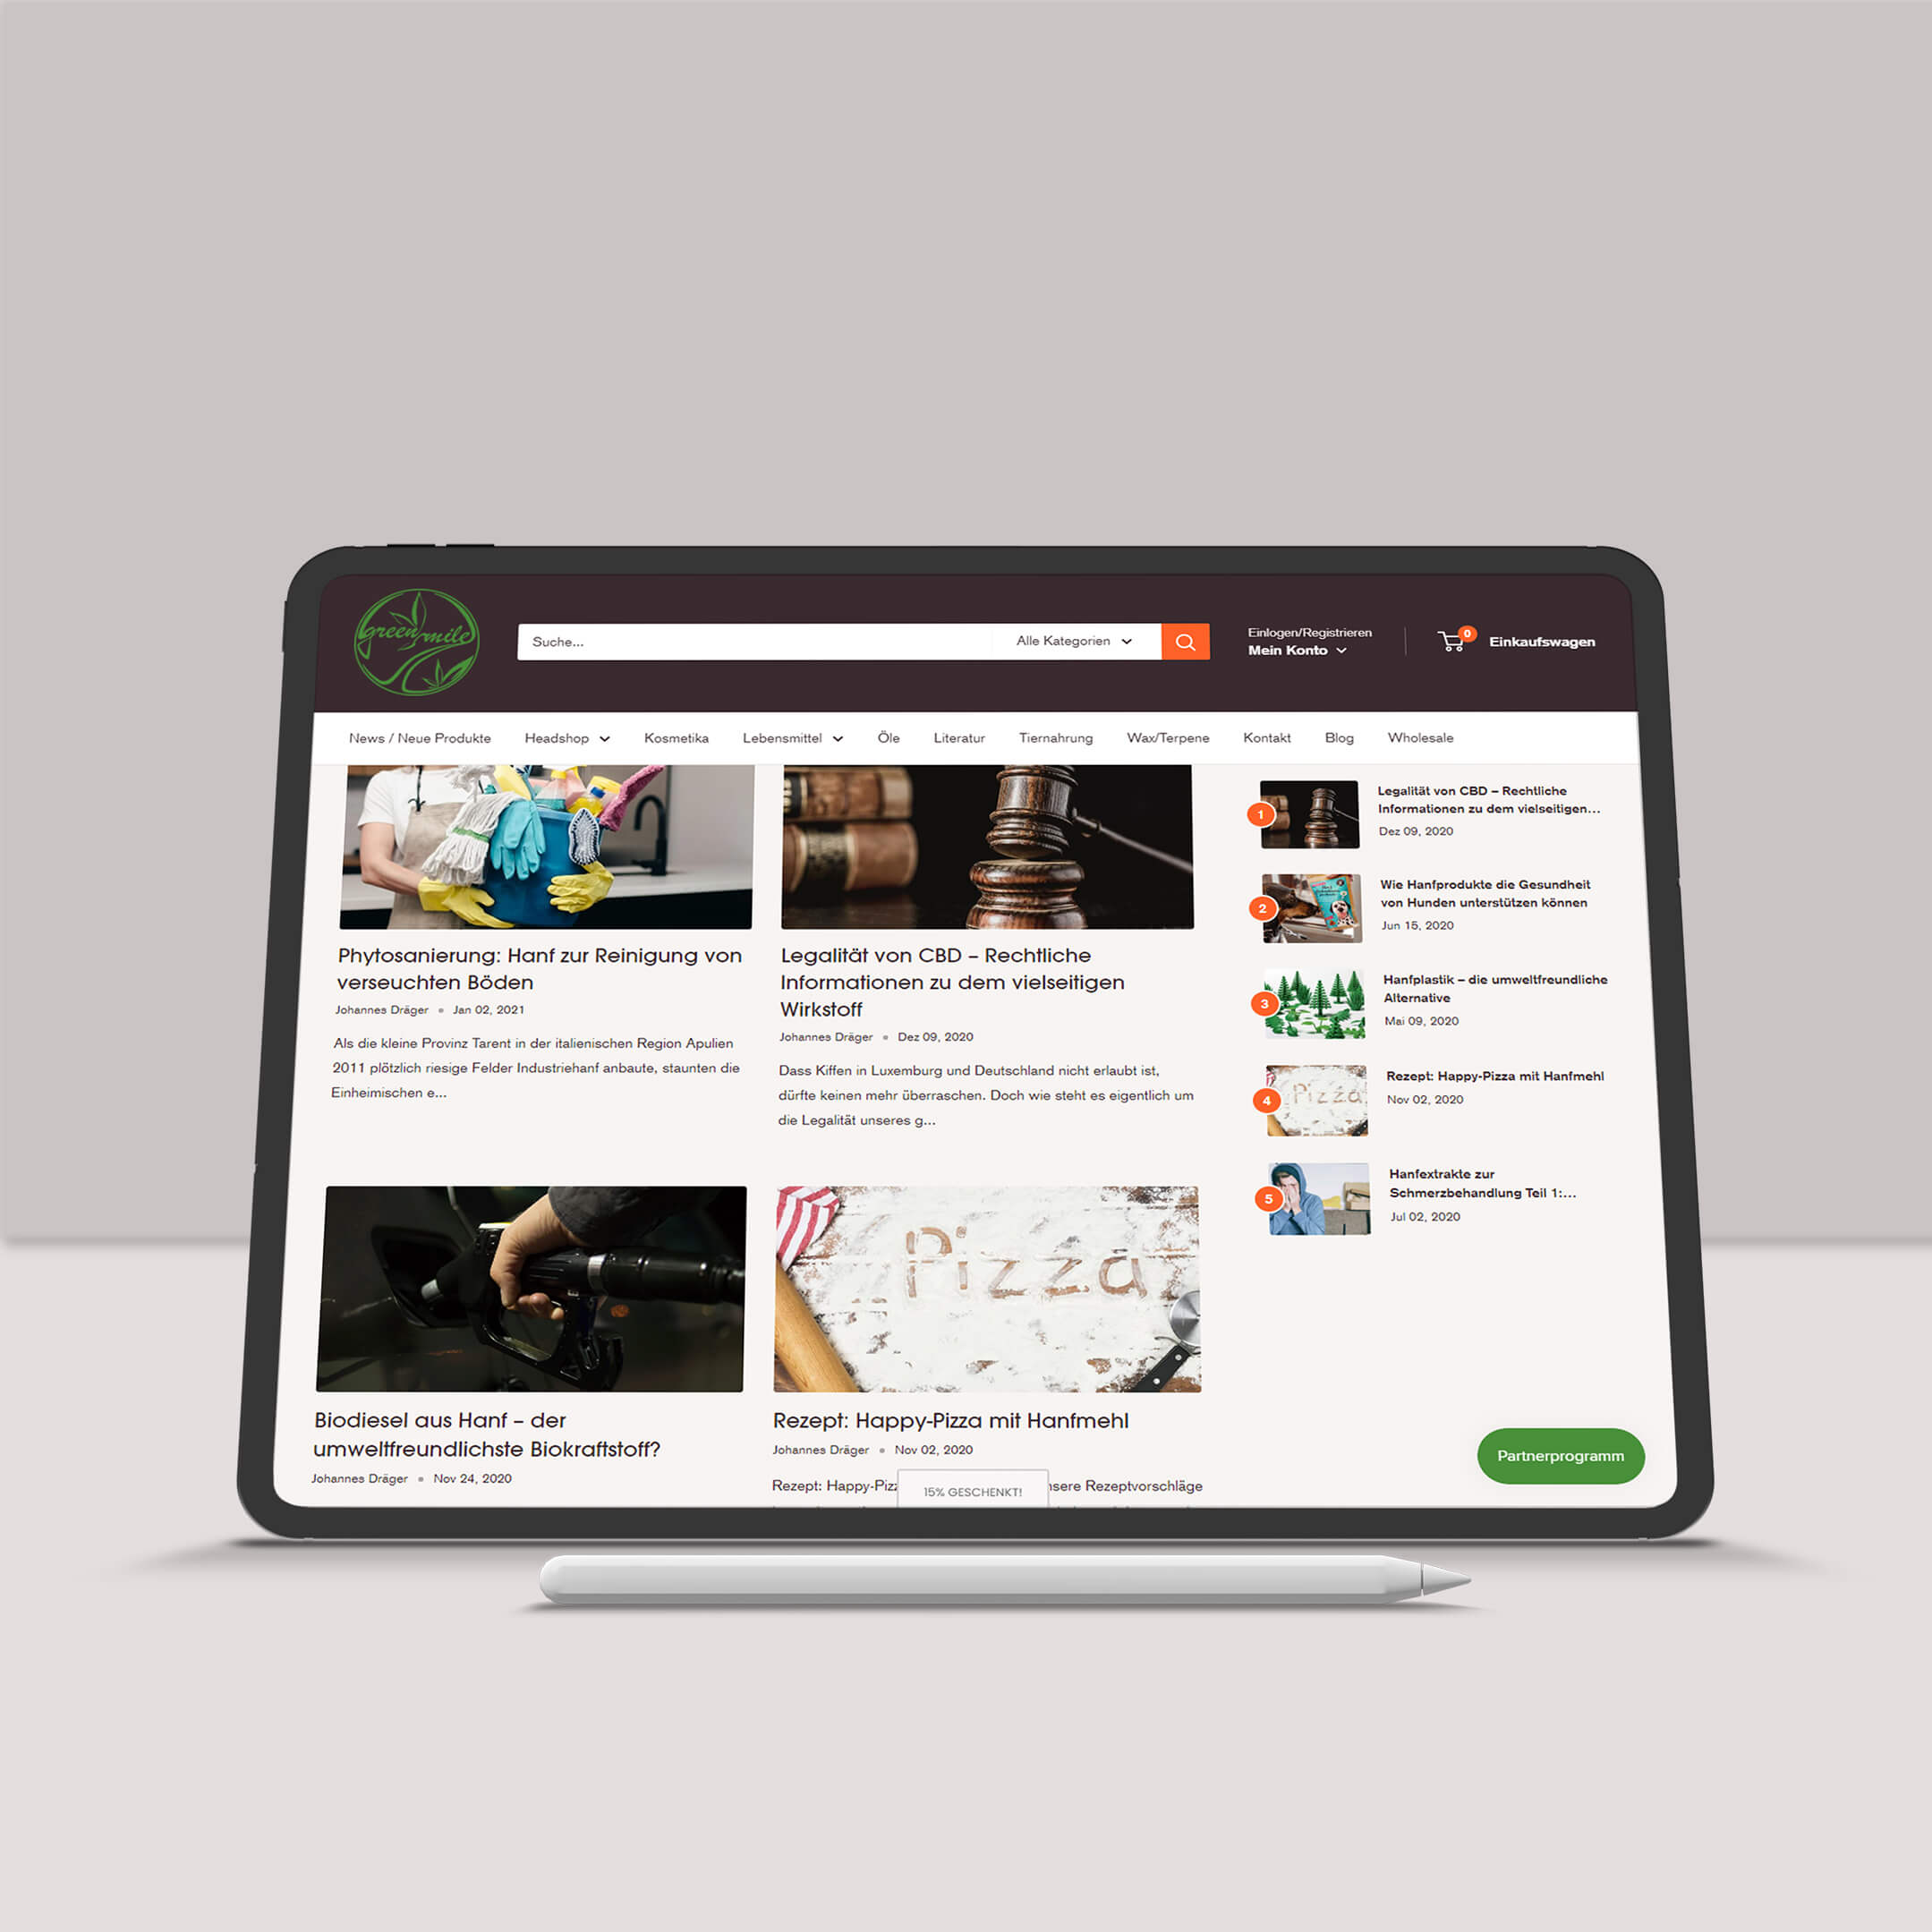 Darstellung von Inhalten bzw. Content eines Internetblogs, Webblog, Blogbeitrag von Green Mile Lux auf einem Tablet